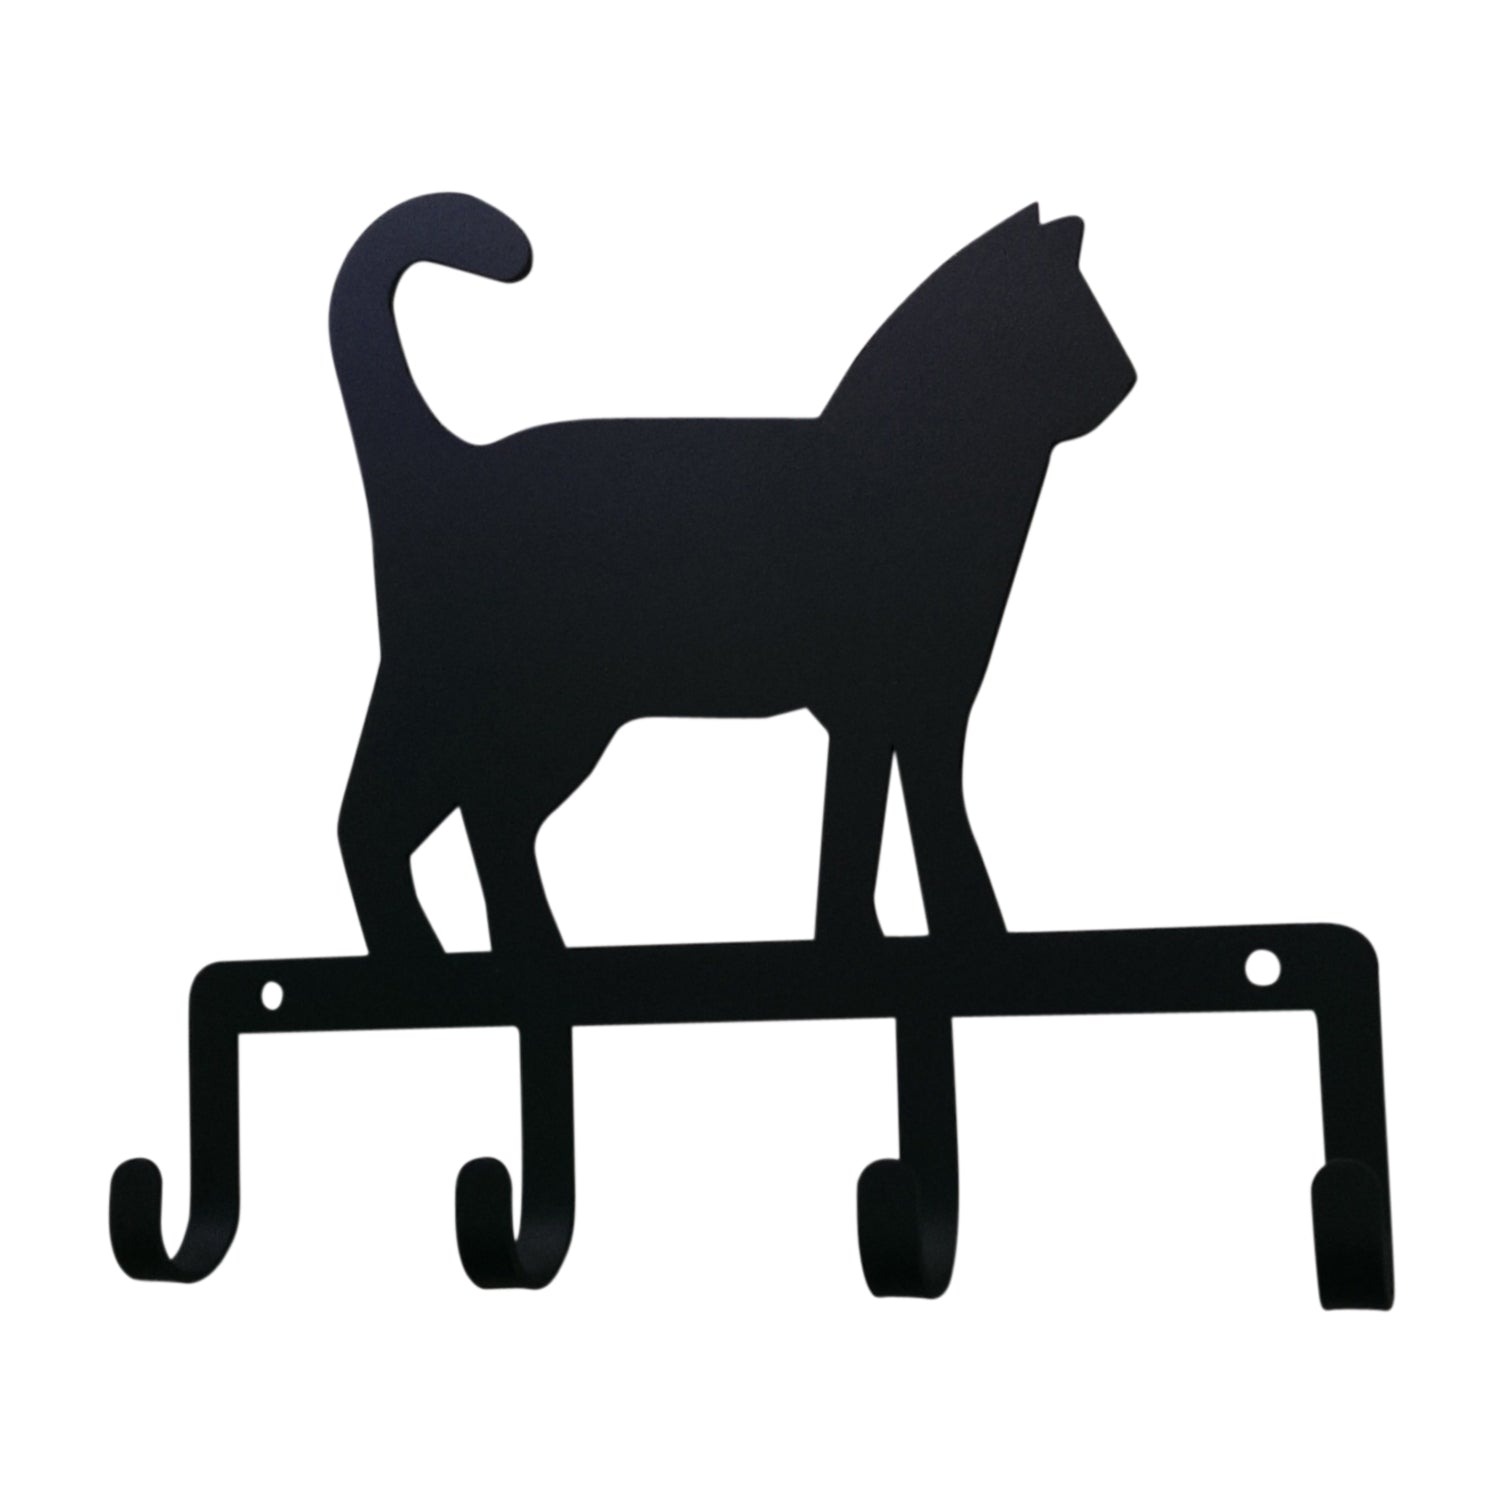 Key holder - Cat Standing.